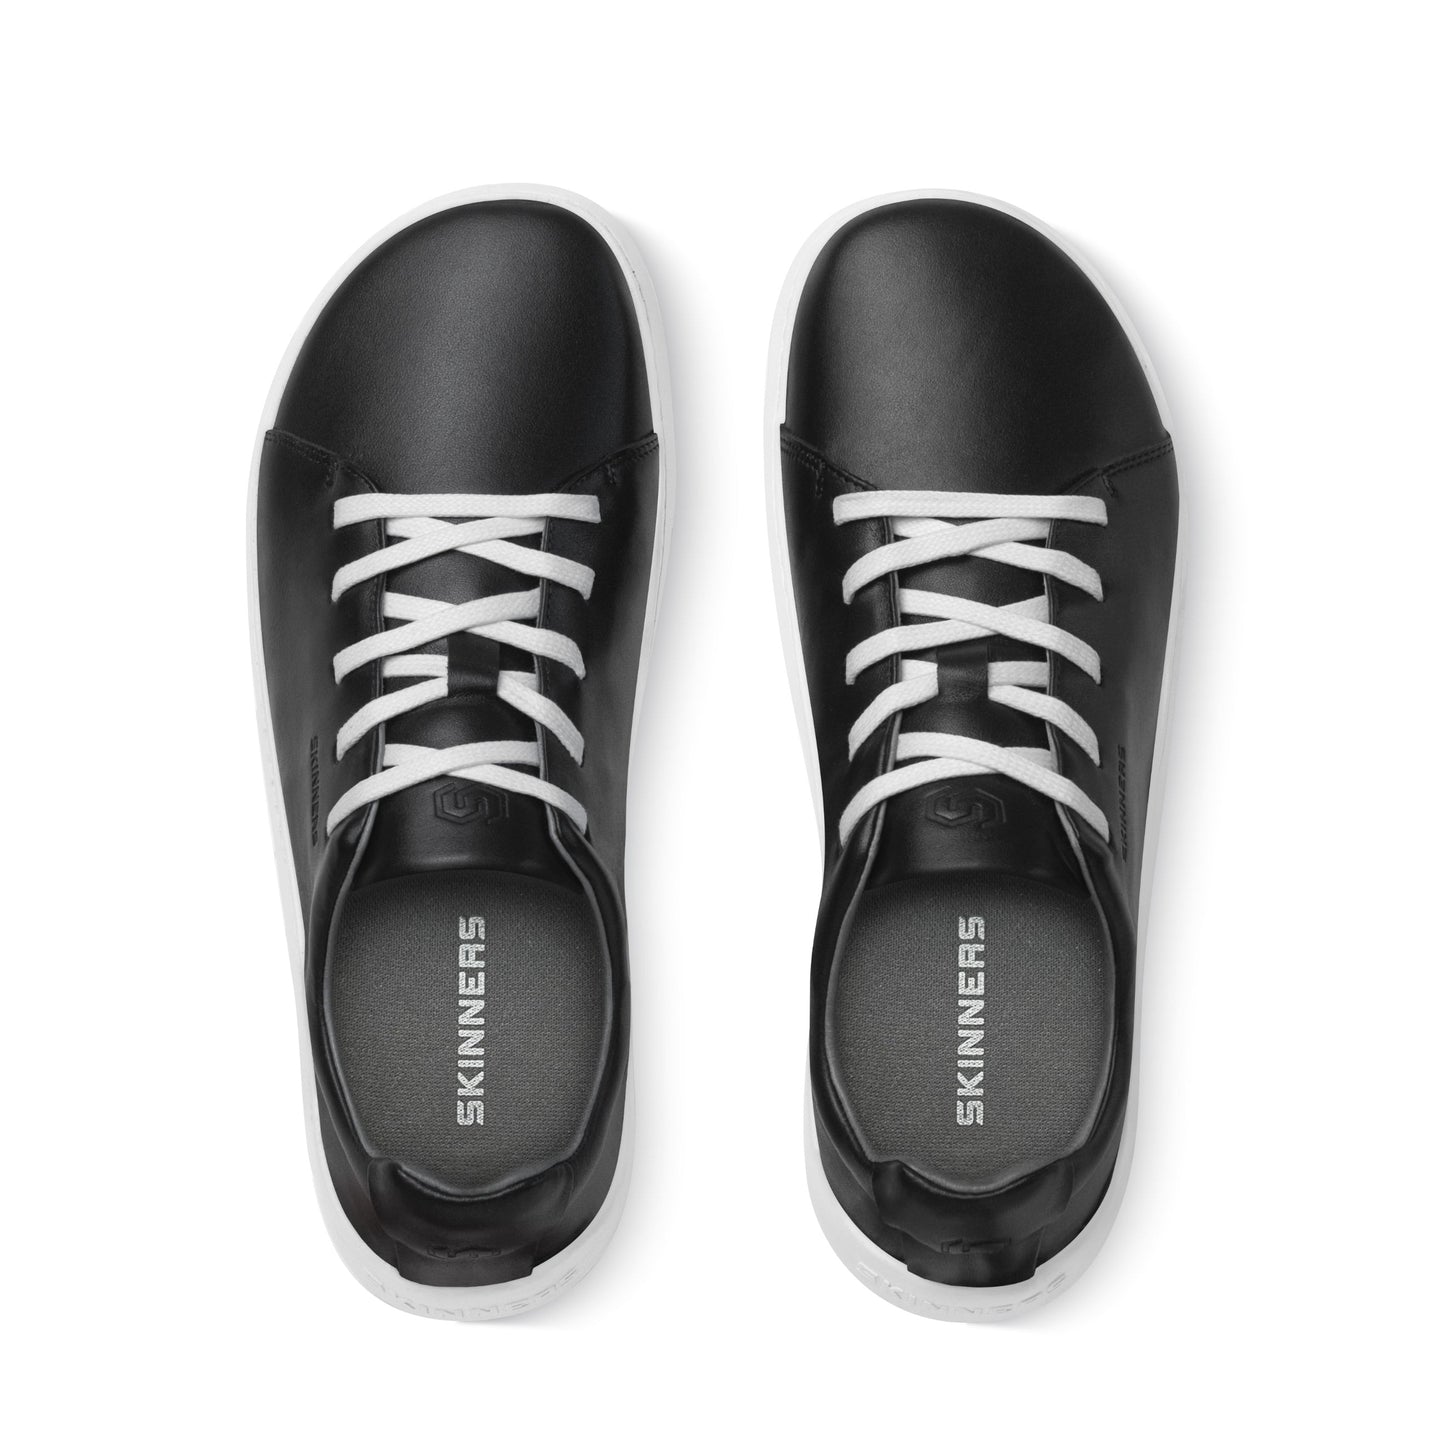 Mærkbare Walker barfods sneakers til kvinder og mænd i farven black / white, top